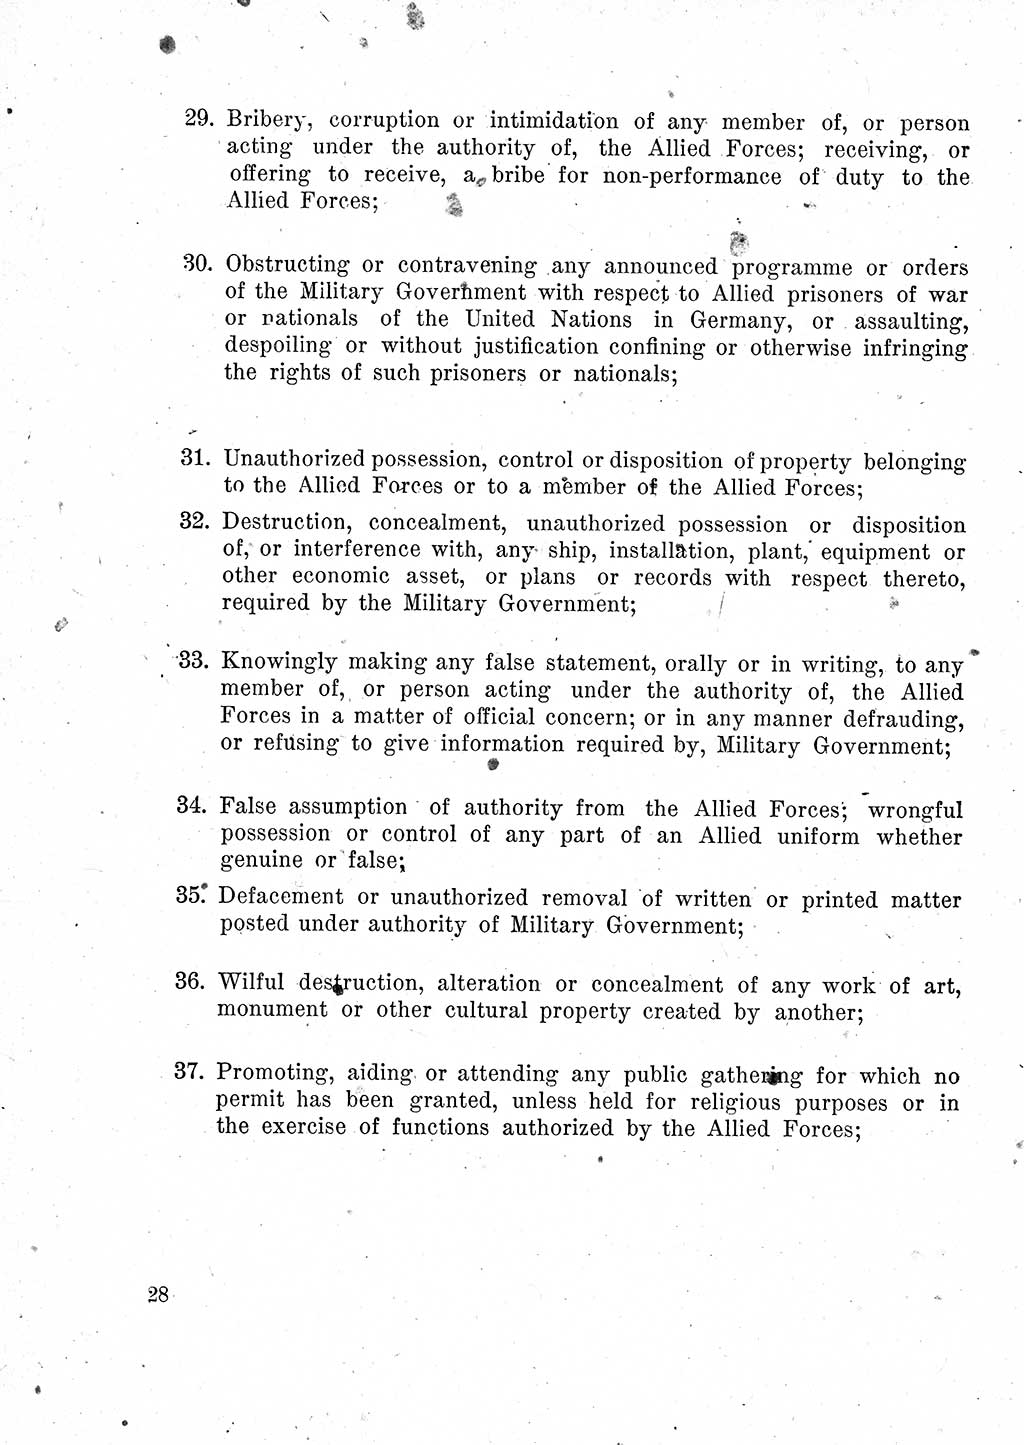 Das Recht der Besatzungsmacht (Deutschland), Proklamationen, Deklerationen, Verordnungen, Gesetze und Bekanntmachungen 1947, Seite 28 (R. Bes. Dtl. 1947, S. 28)